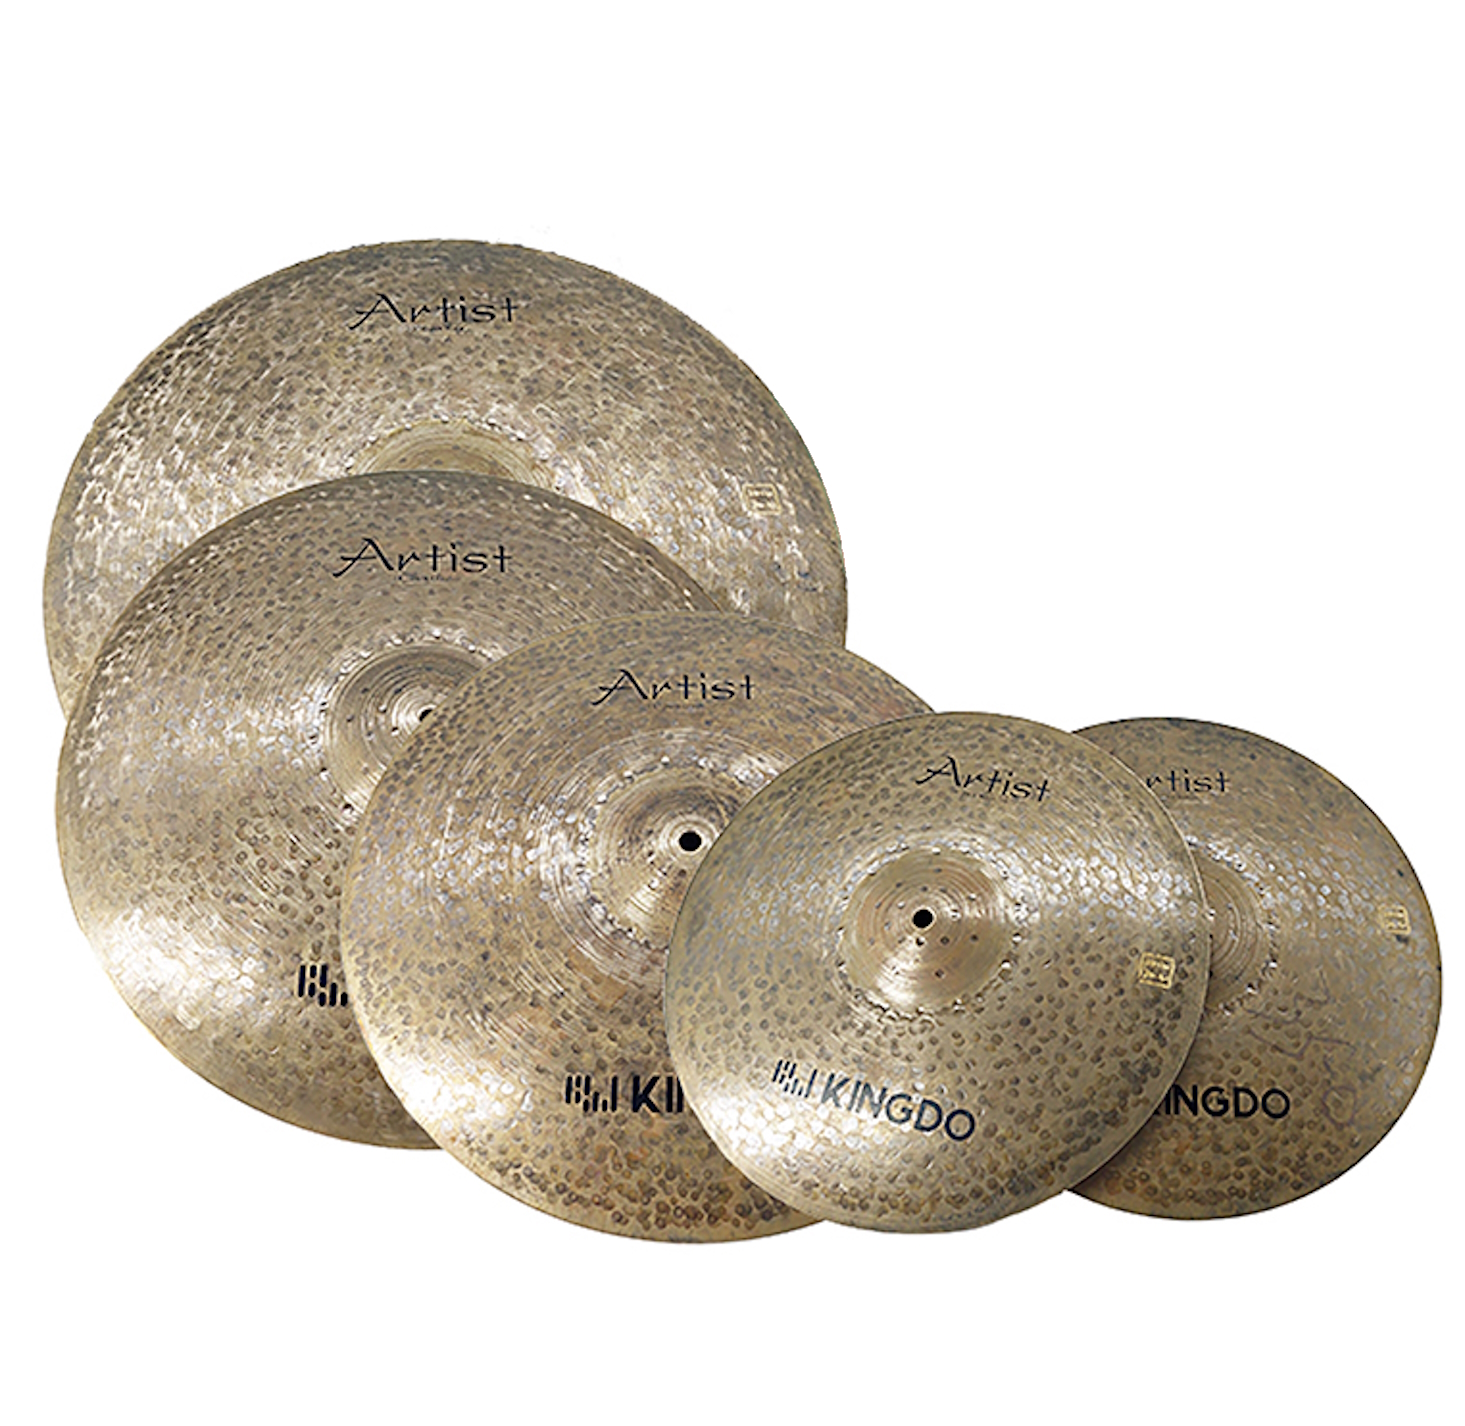 тарелки барабаны для ударных установок kingdo h68 set 14 16 20 Тарелки, барабаны для ударных установок KINGDO ARTIST DARK SET 14